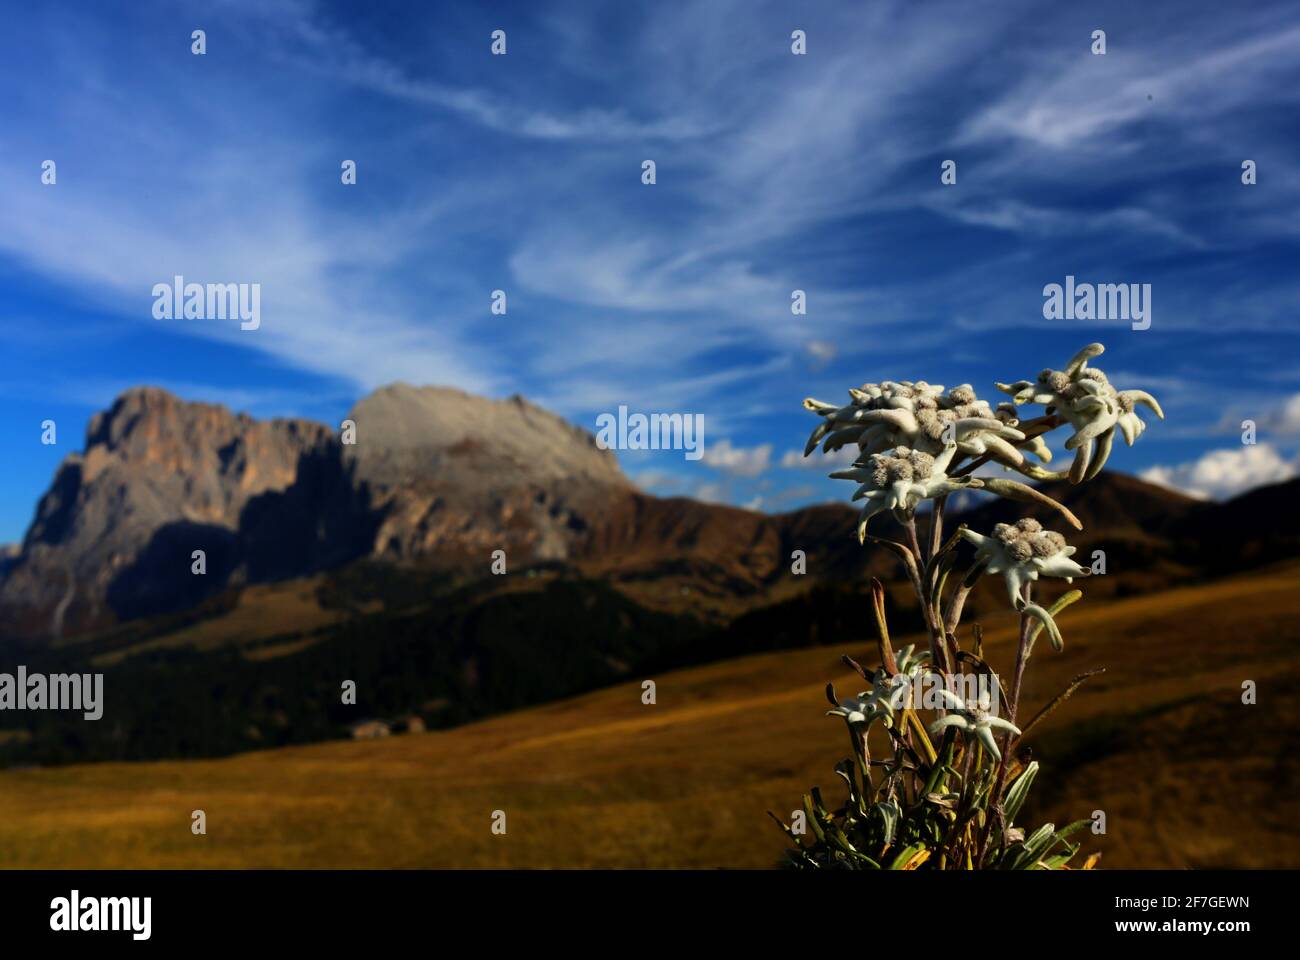 Am Langkofel steht ein Edelweiss auf einer Almwiese der sommerlichen Seiser Alm in den Dolomiten, Südtirol, Italien Foto Stock